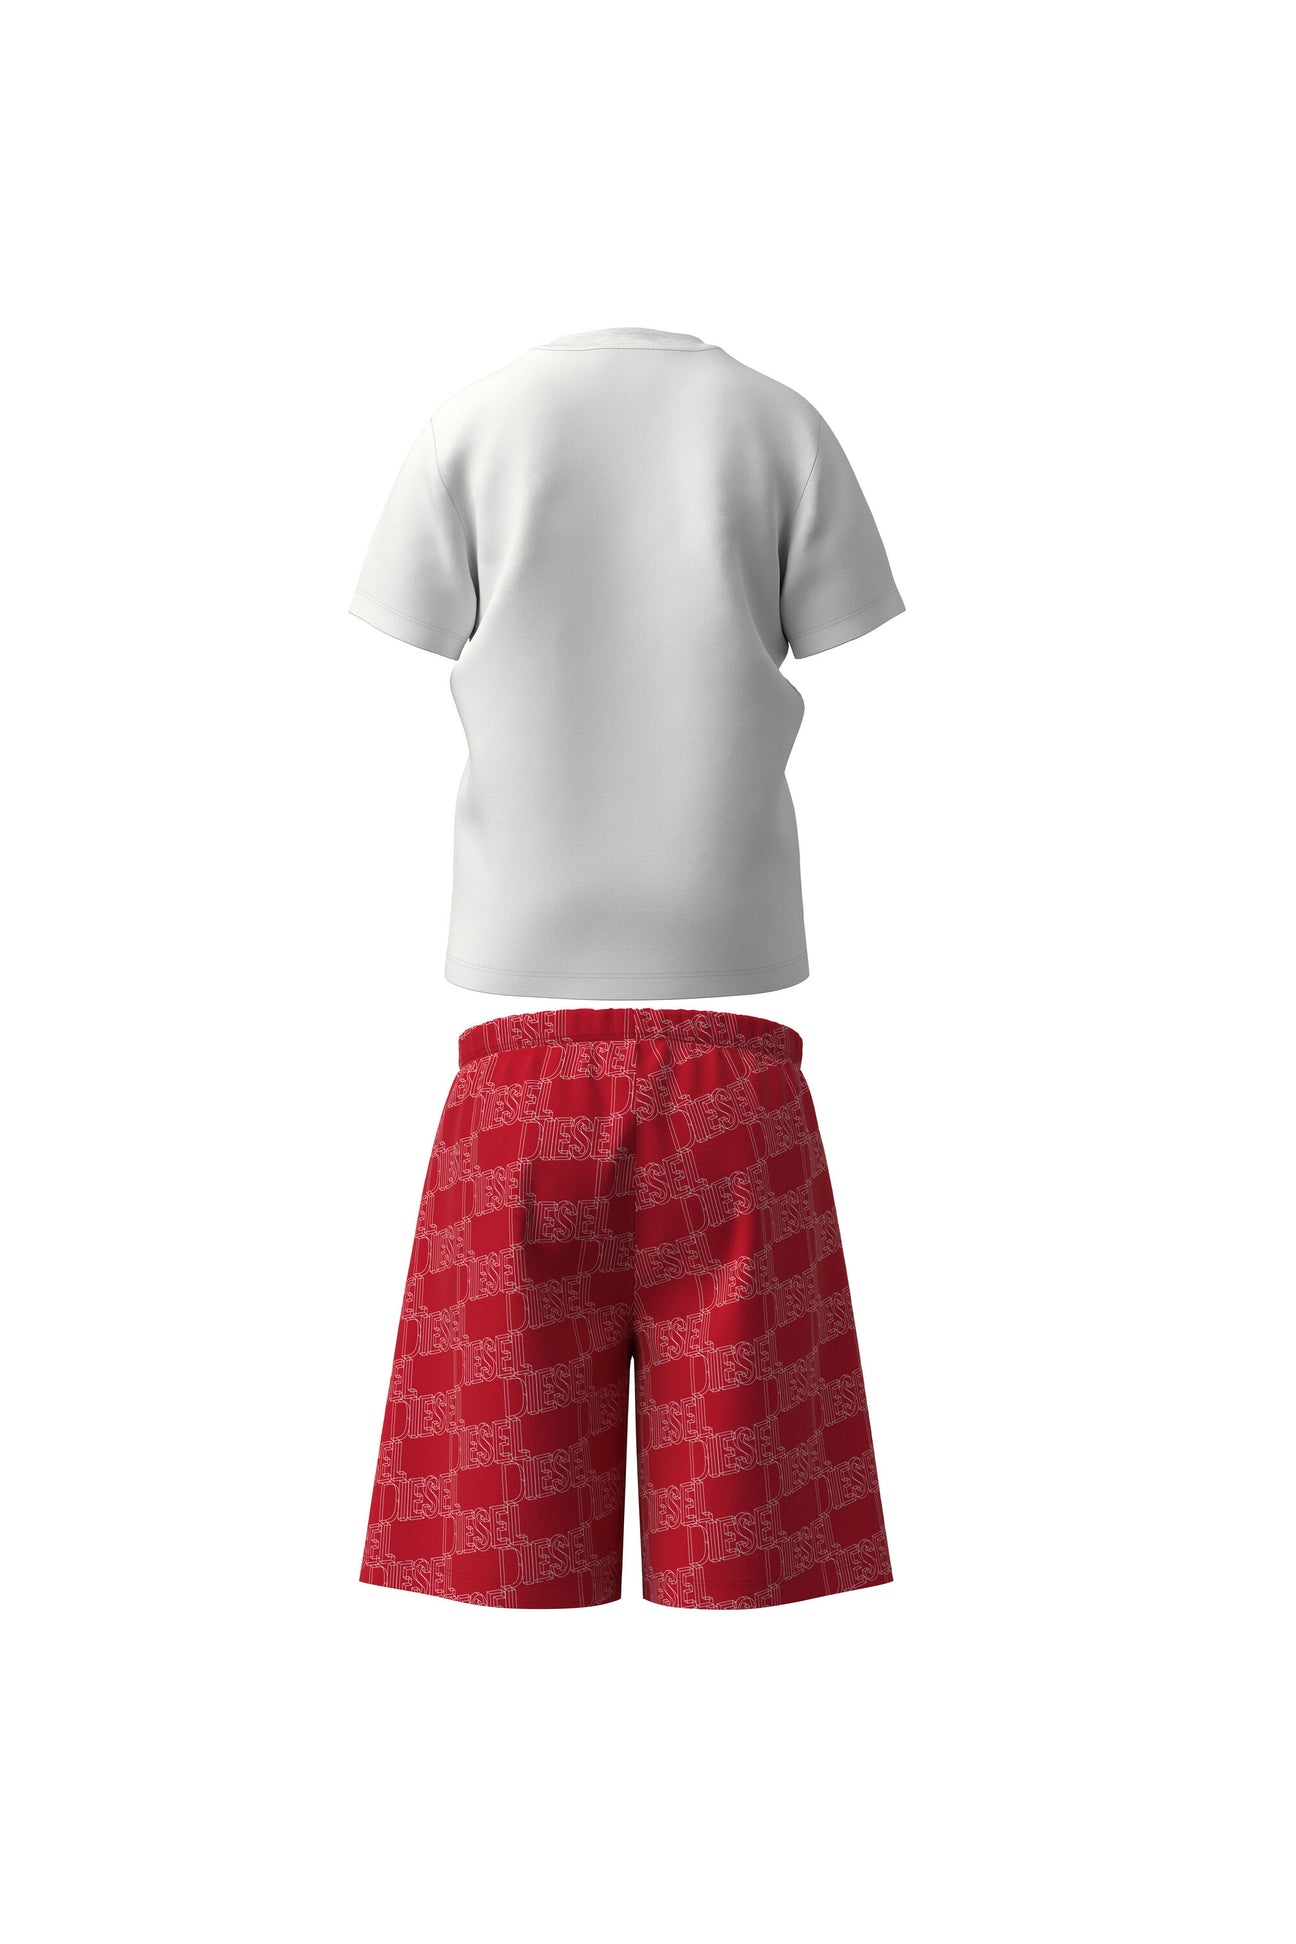 Pijama corto de jersey rojo y blanco con logotipo Pijama corto de jersey rojo y blanco con logotipo